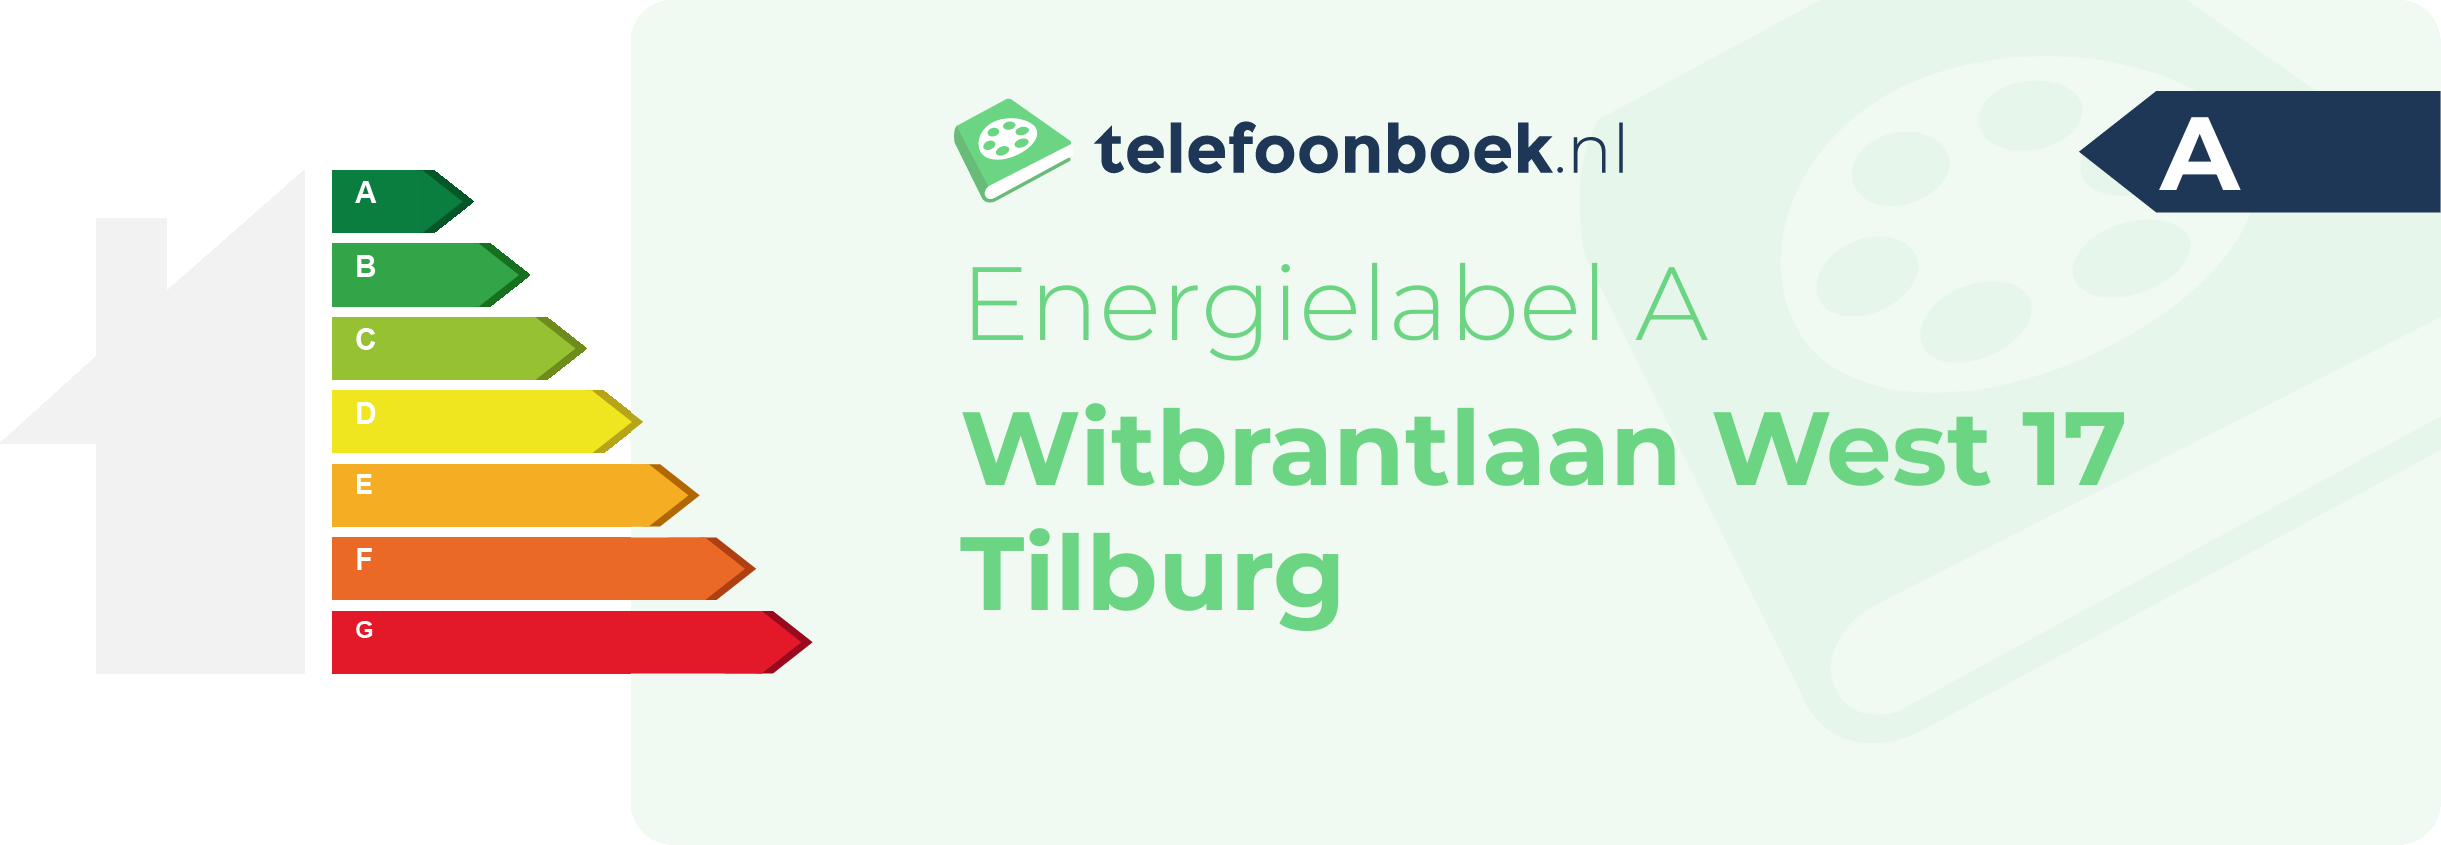 Energielabel Witbrantlaan West 17 Tilburg